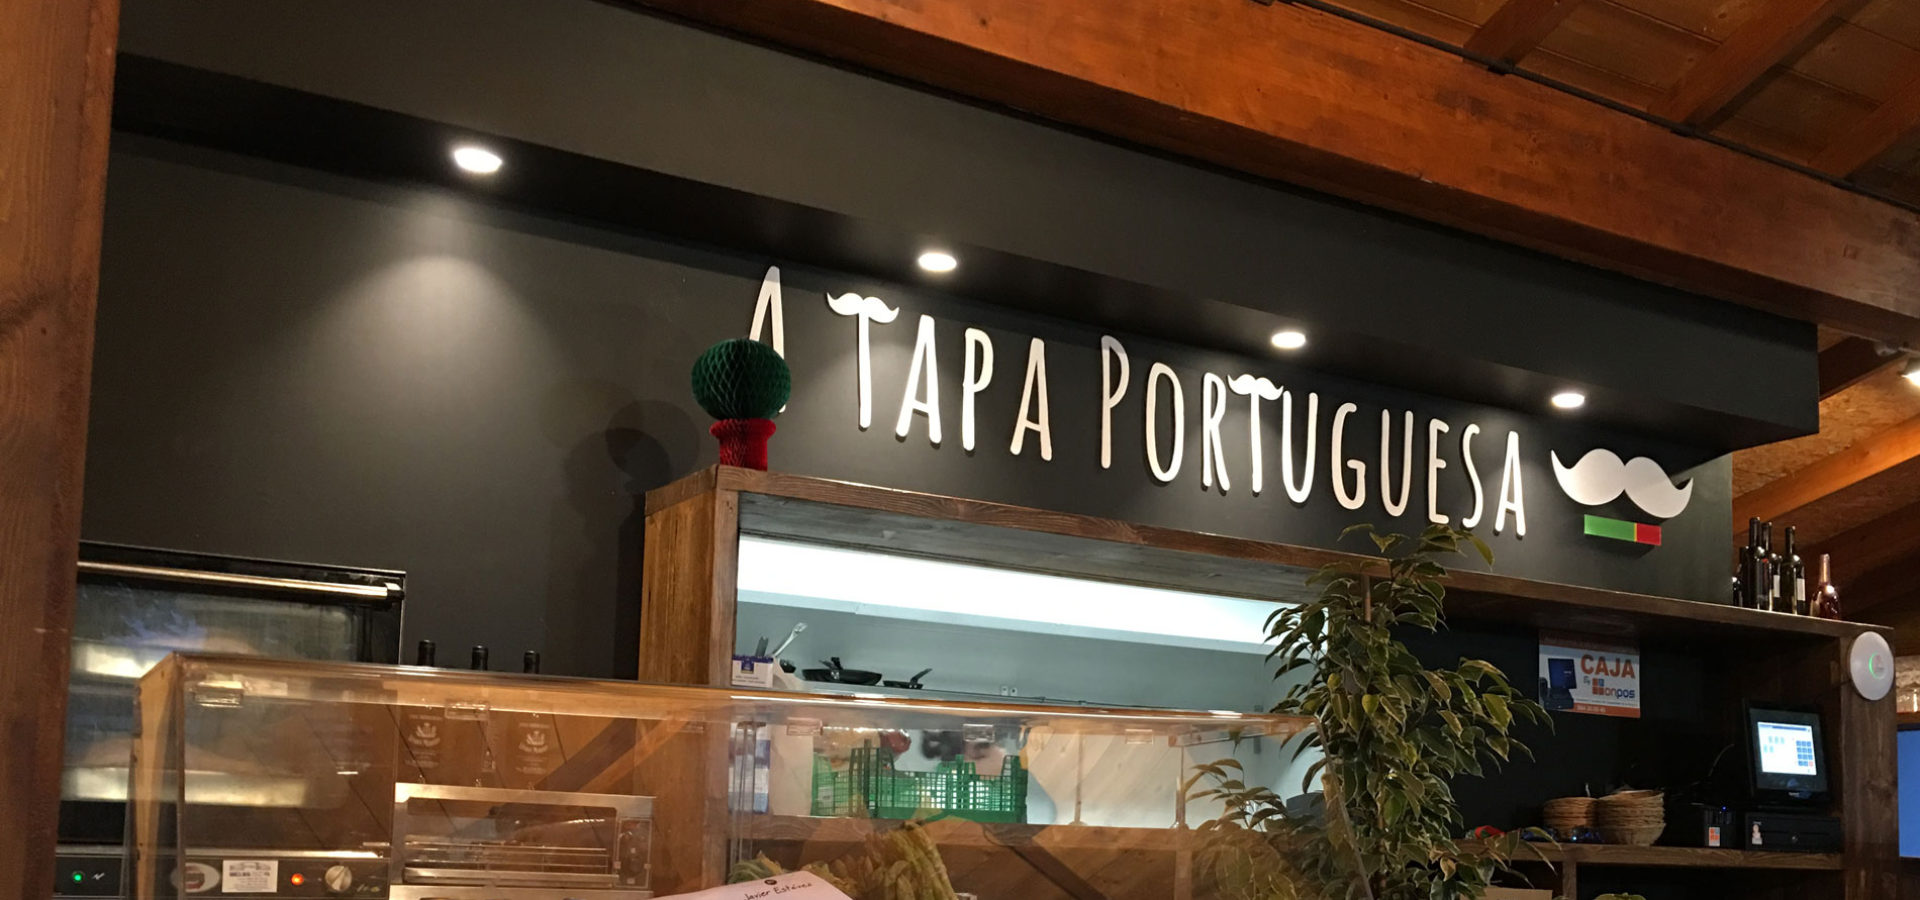 a-tapa-portuguesa-banner-1